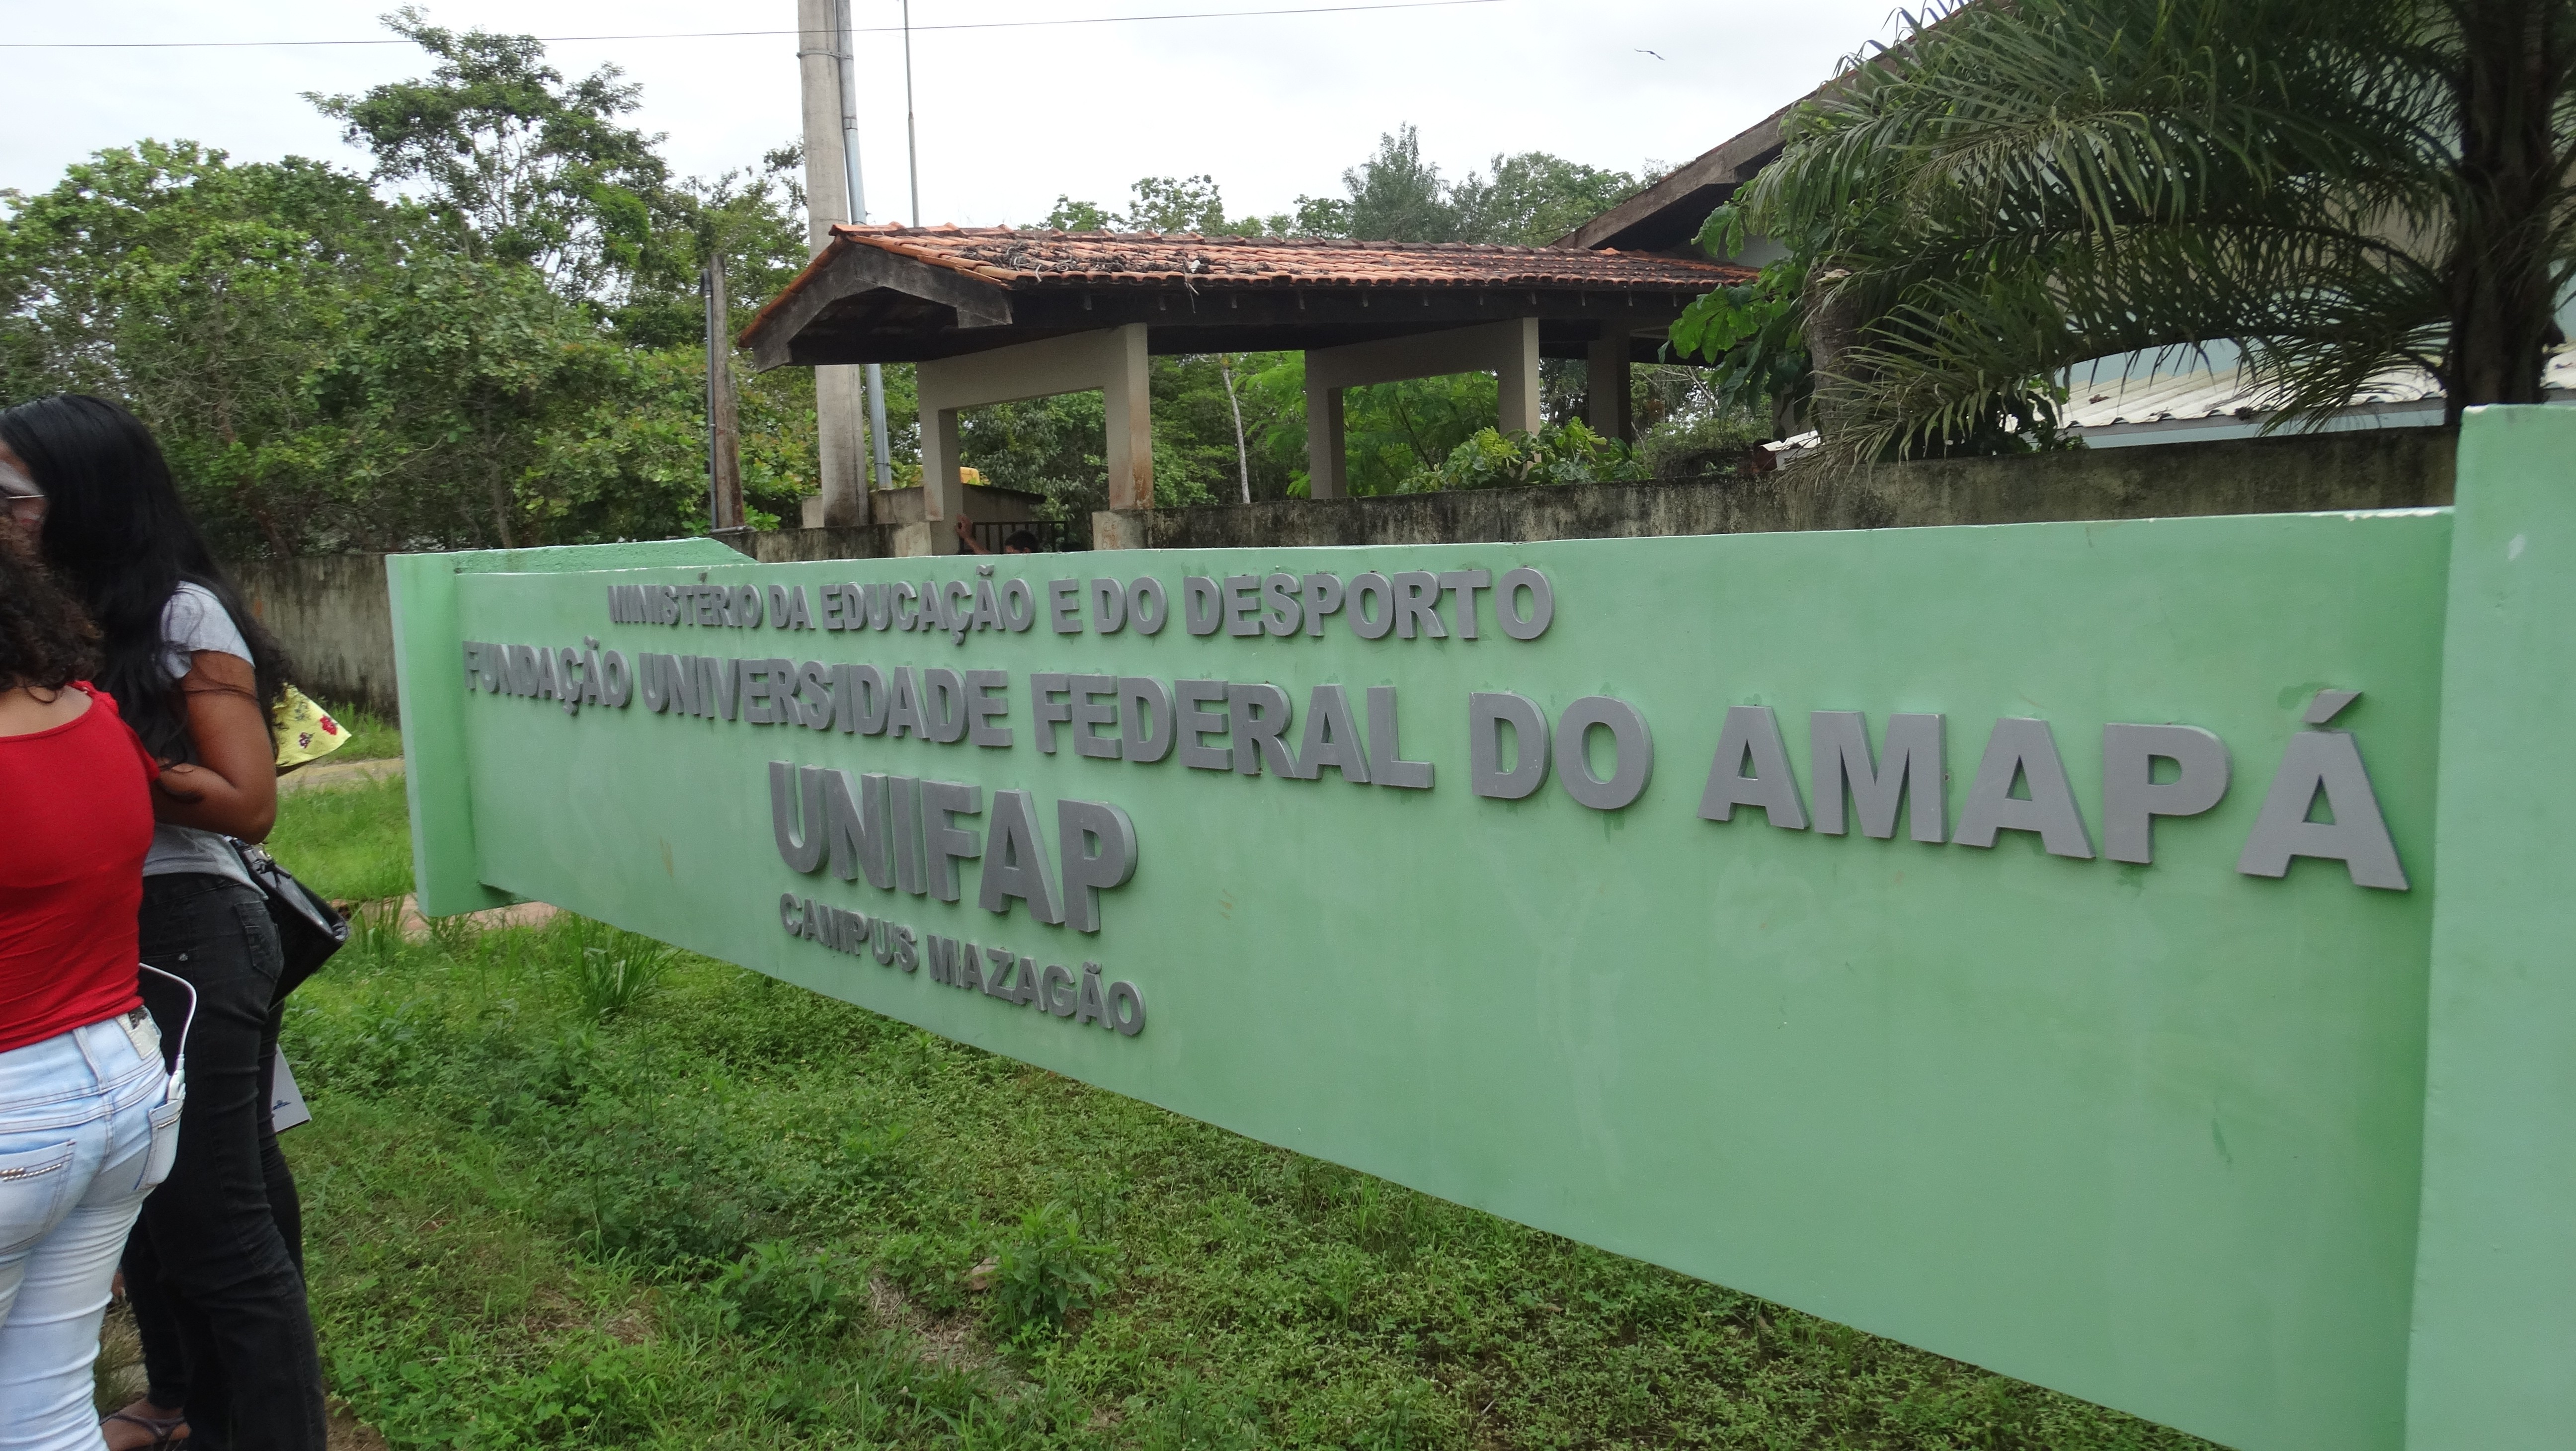 Unifap oferta 40 vagas para educação do campo em Mazagão; veja como se inscrever 